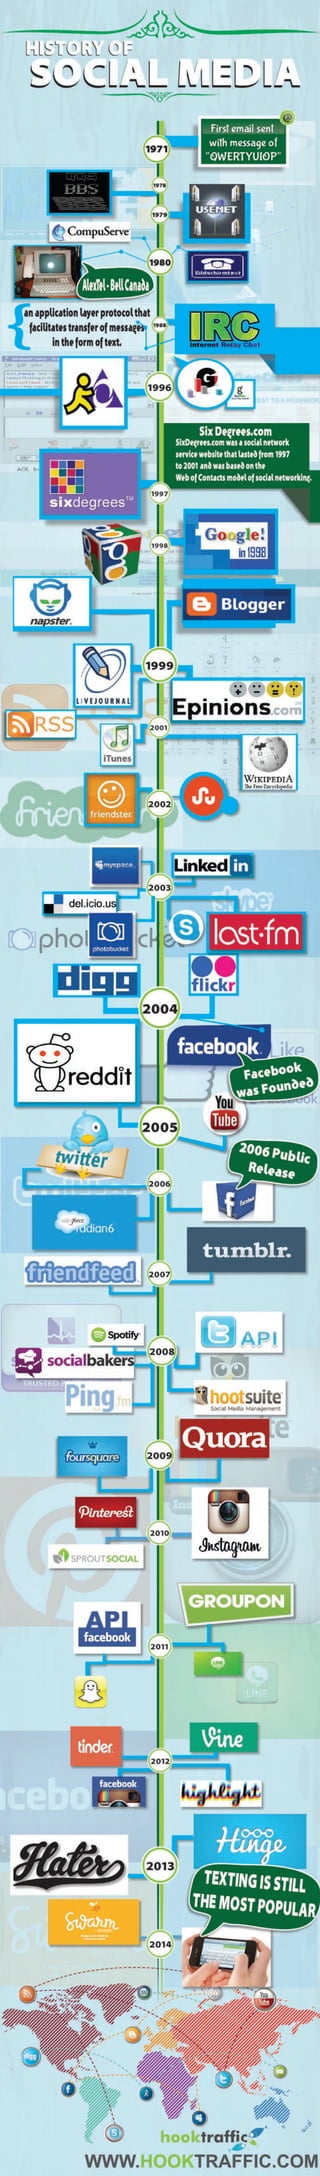 History of Social Media